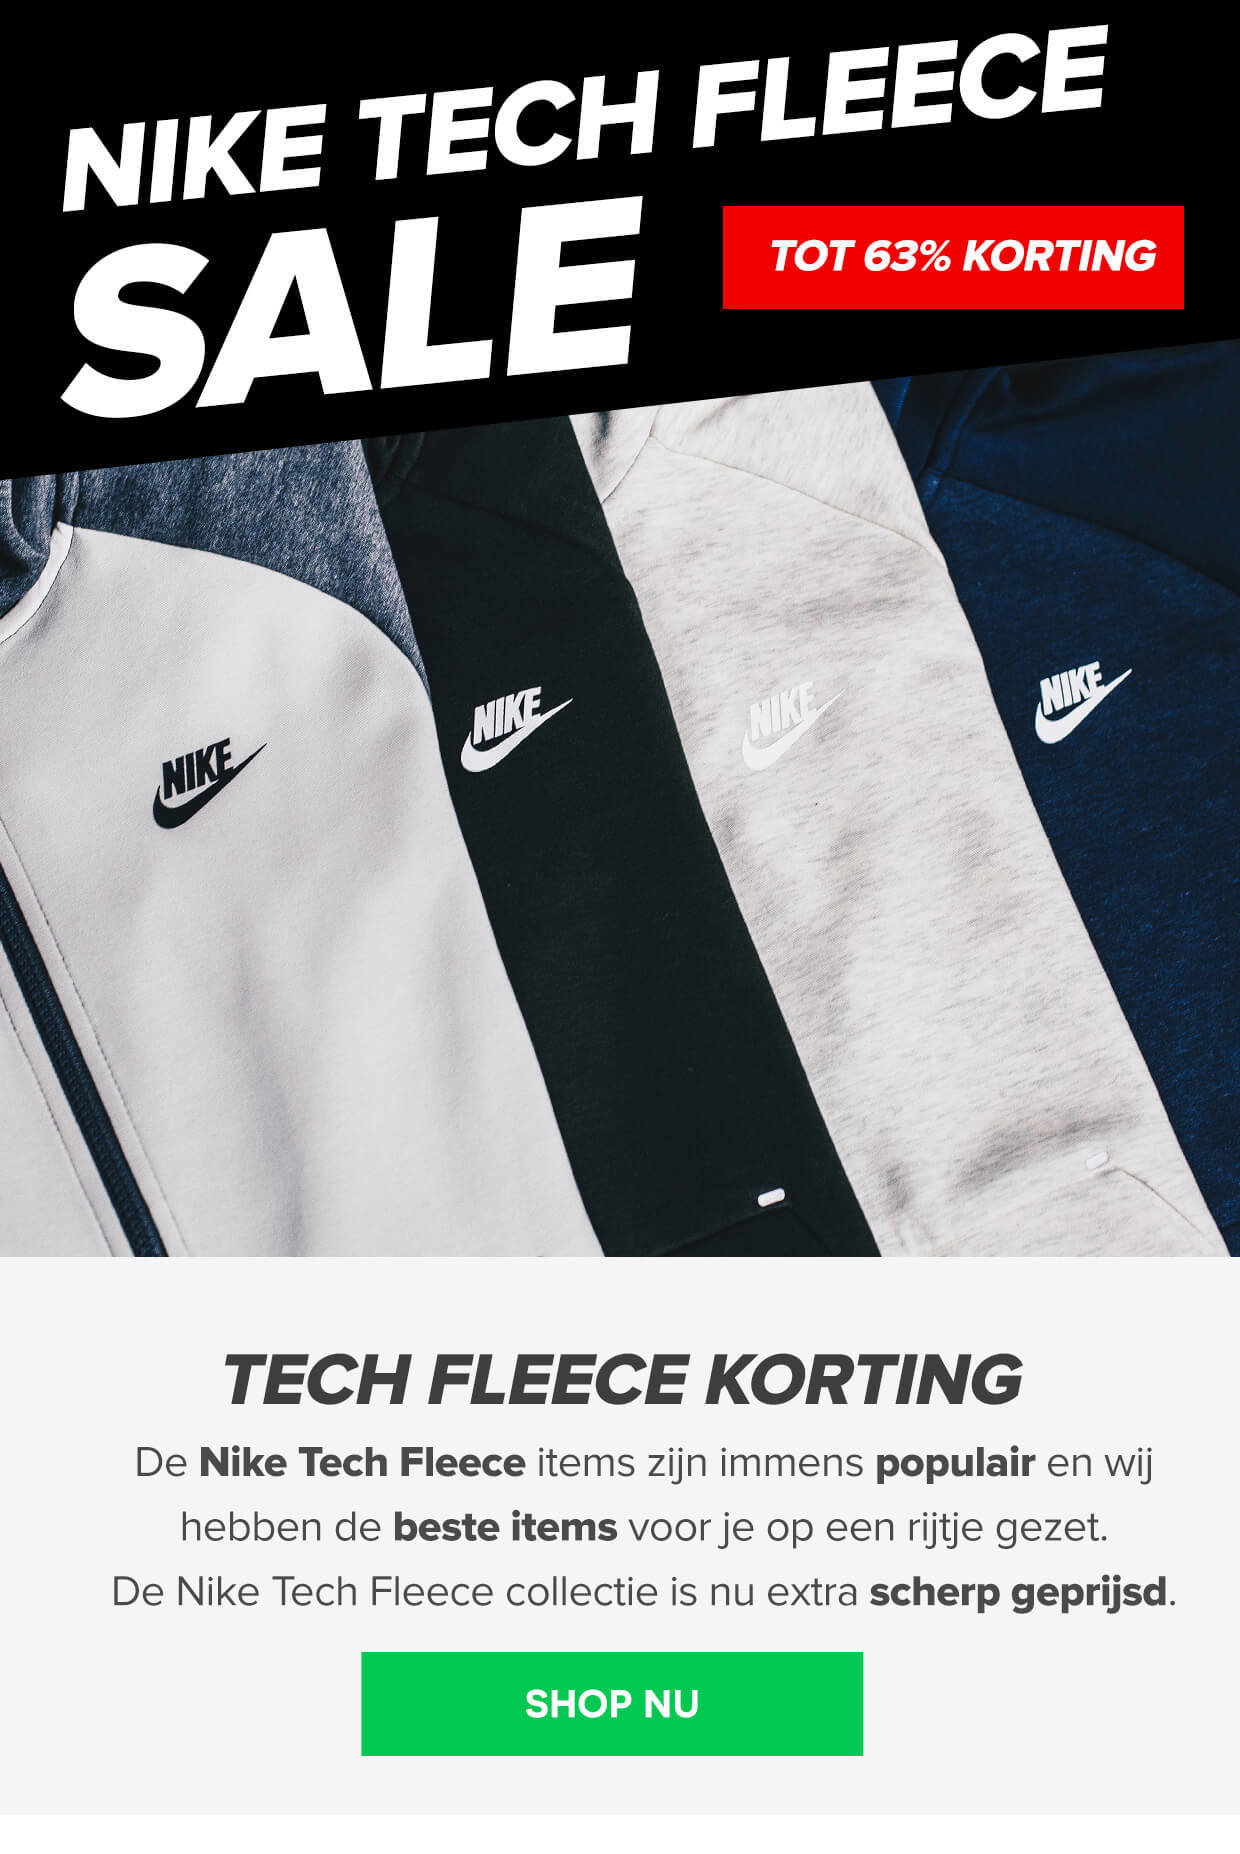 elkaar Schuldig vacature Voetbalshop.be: TECH FLEECE SOLDEN | Tot 63% korting op Nike Tech Fleece! ⚽  | Milled